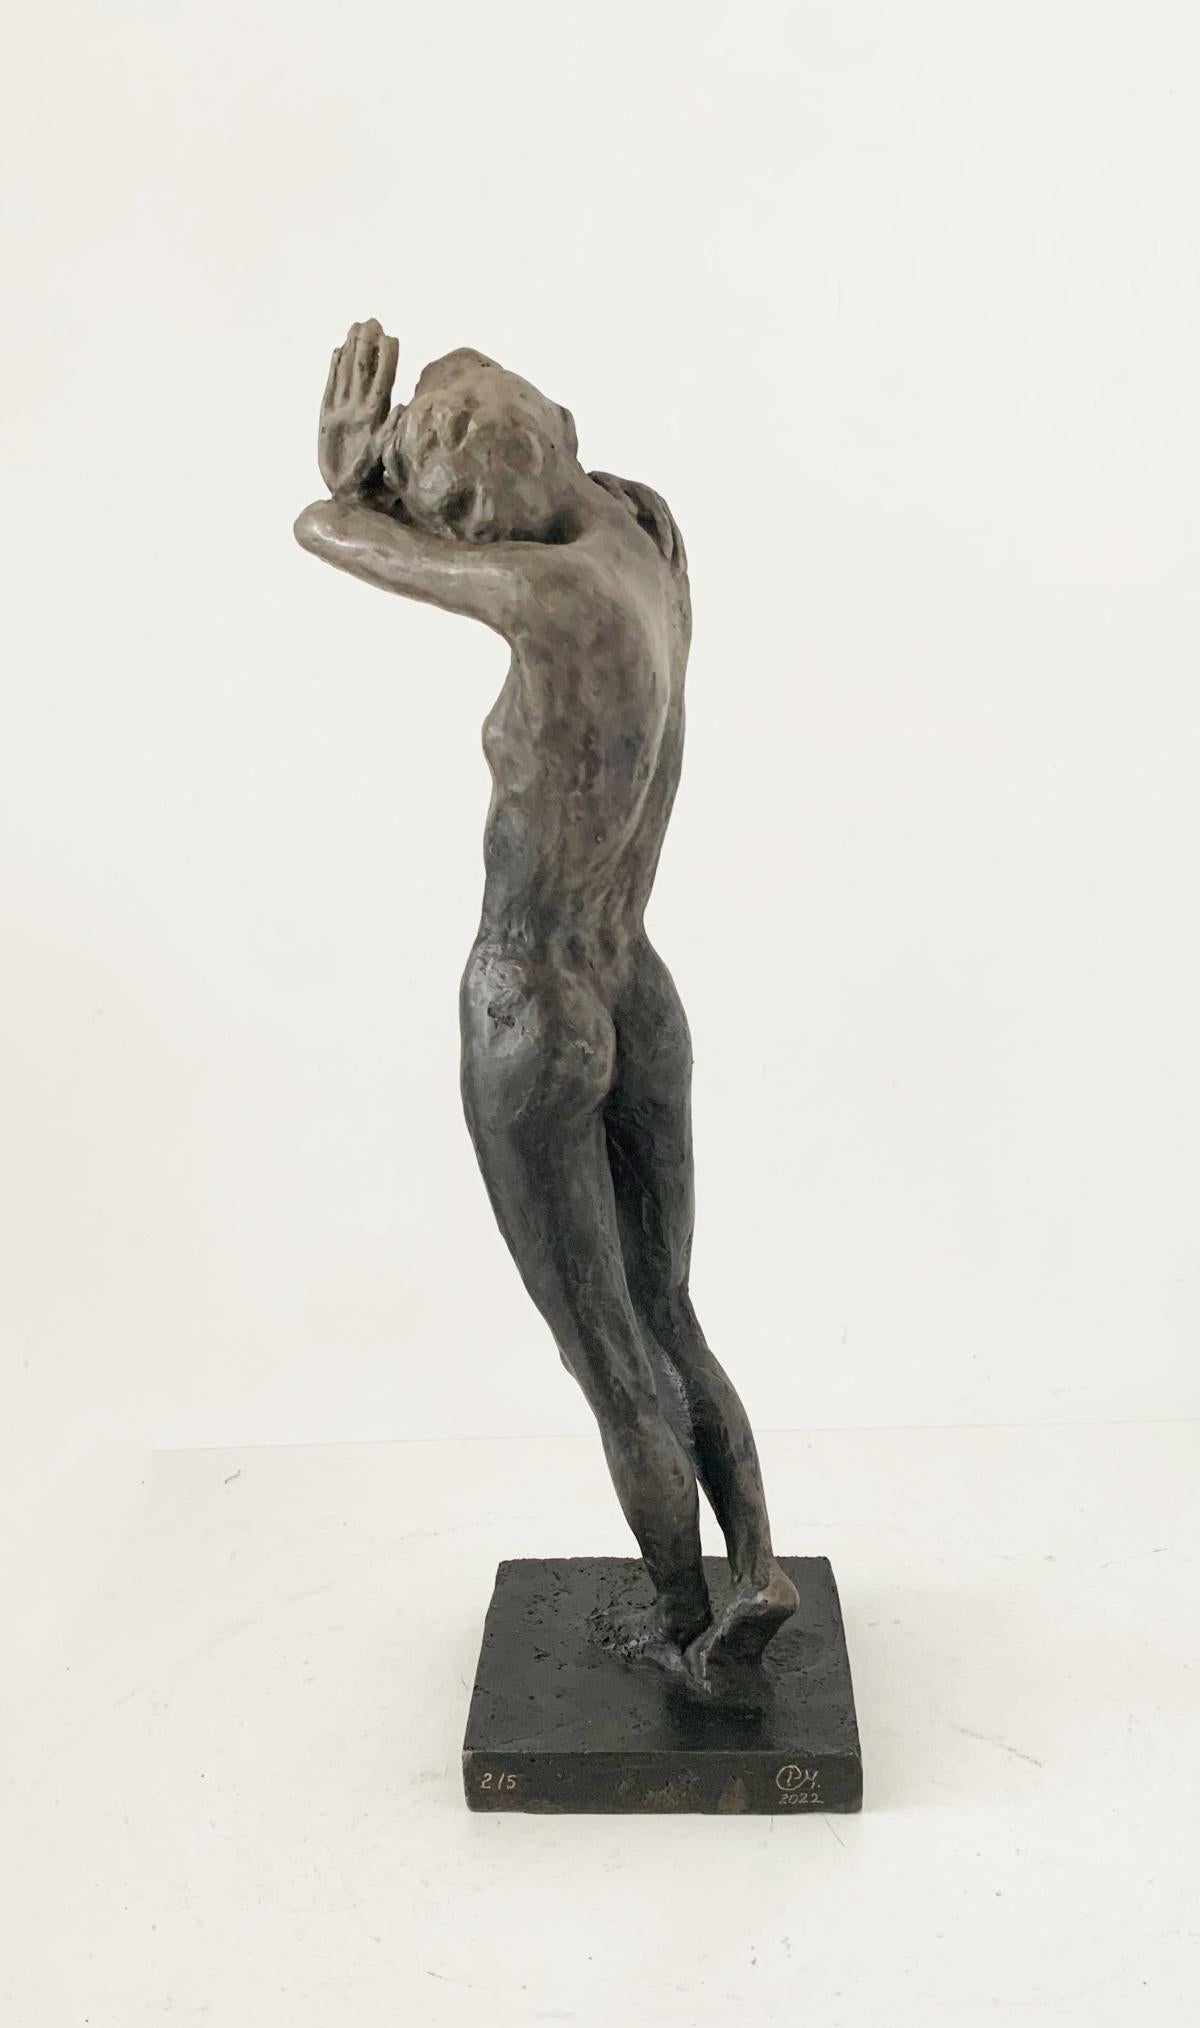 Sculpture en bronze en édition limitée de l'artiste polonaise Olga Prokop-Misniakiewicz. L'artiste signe ses œuvres à la main, à l'aide d'un outil de gravure. Édition de 5 exemplaires. Olga Prokop-Misniakiewicz aime expérimenter avec la matière